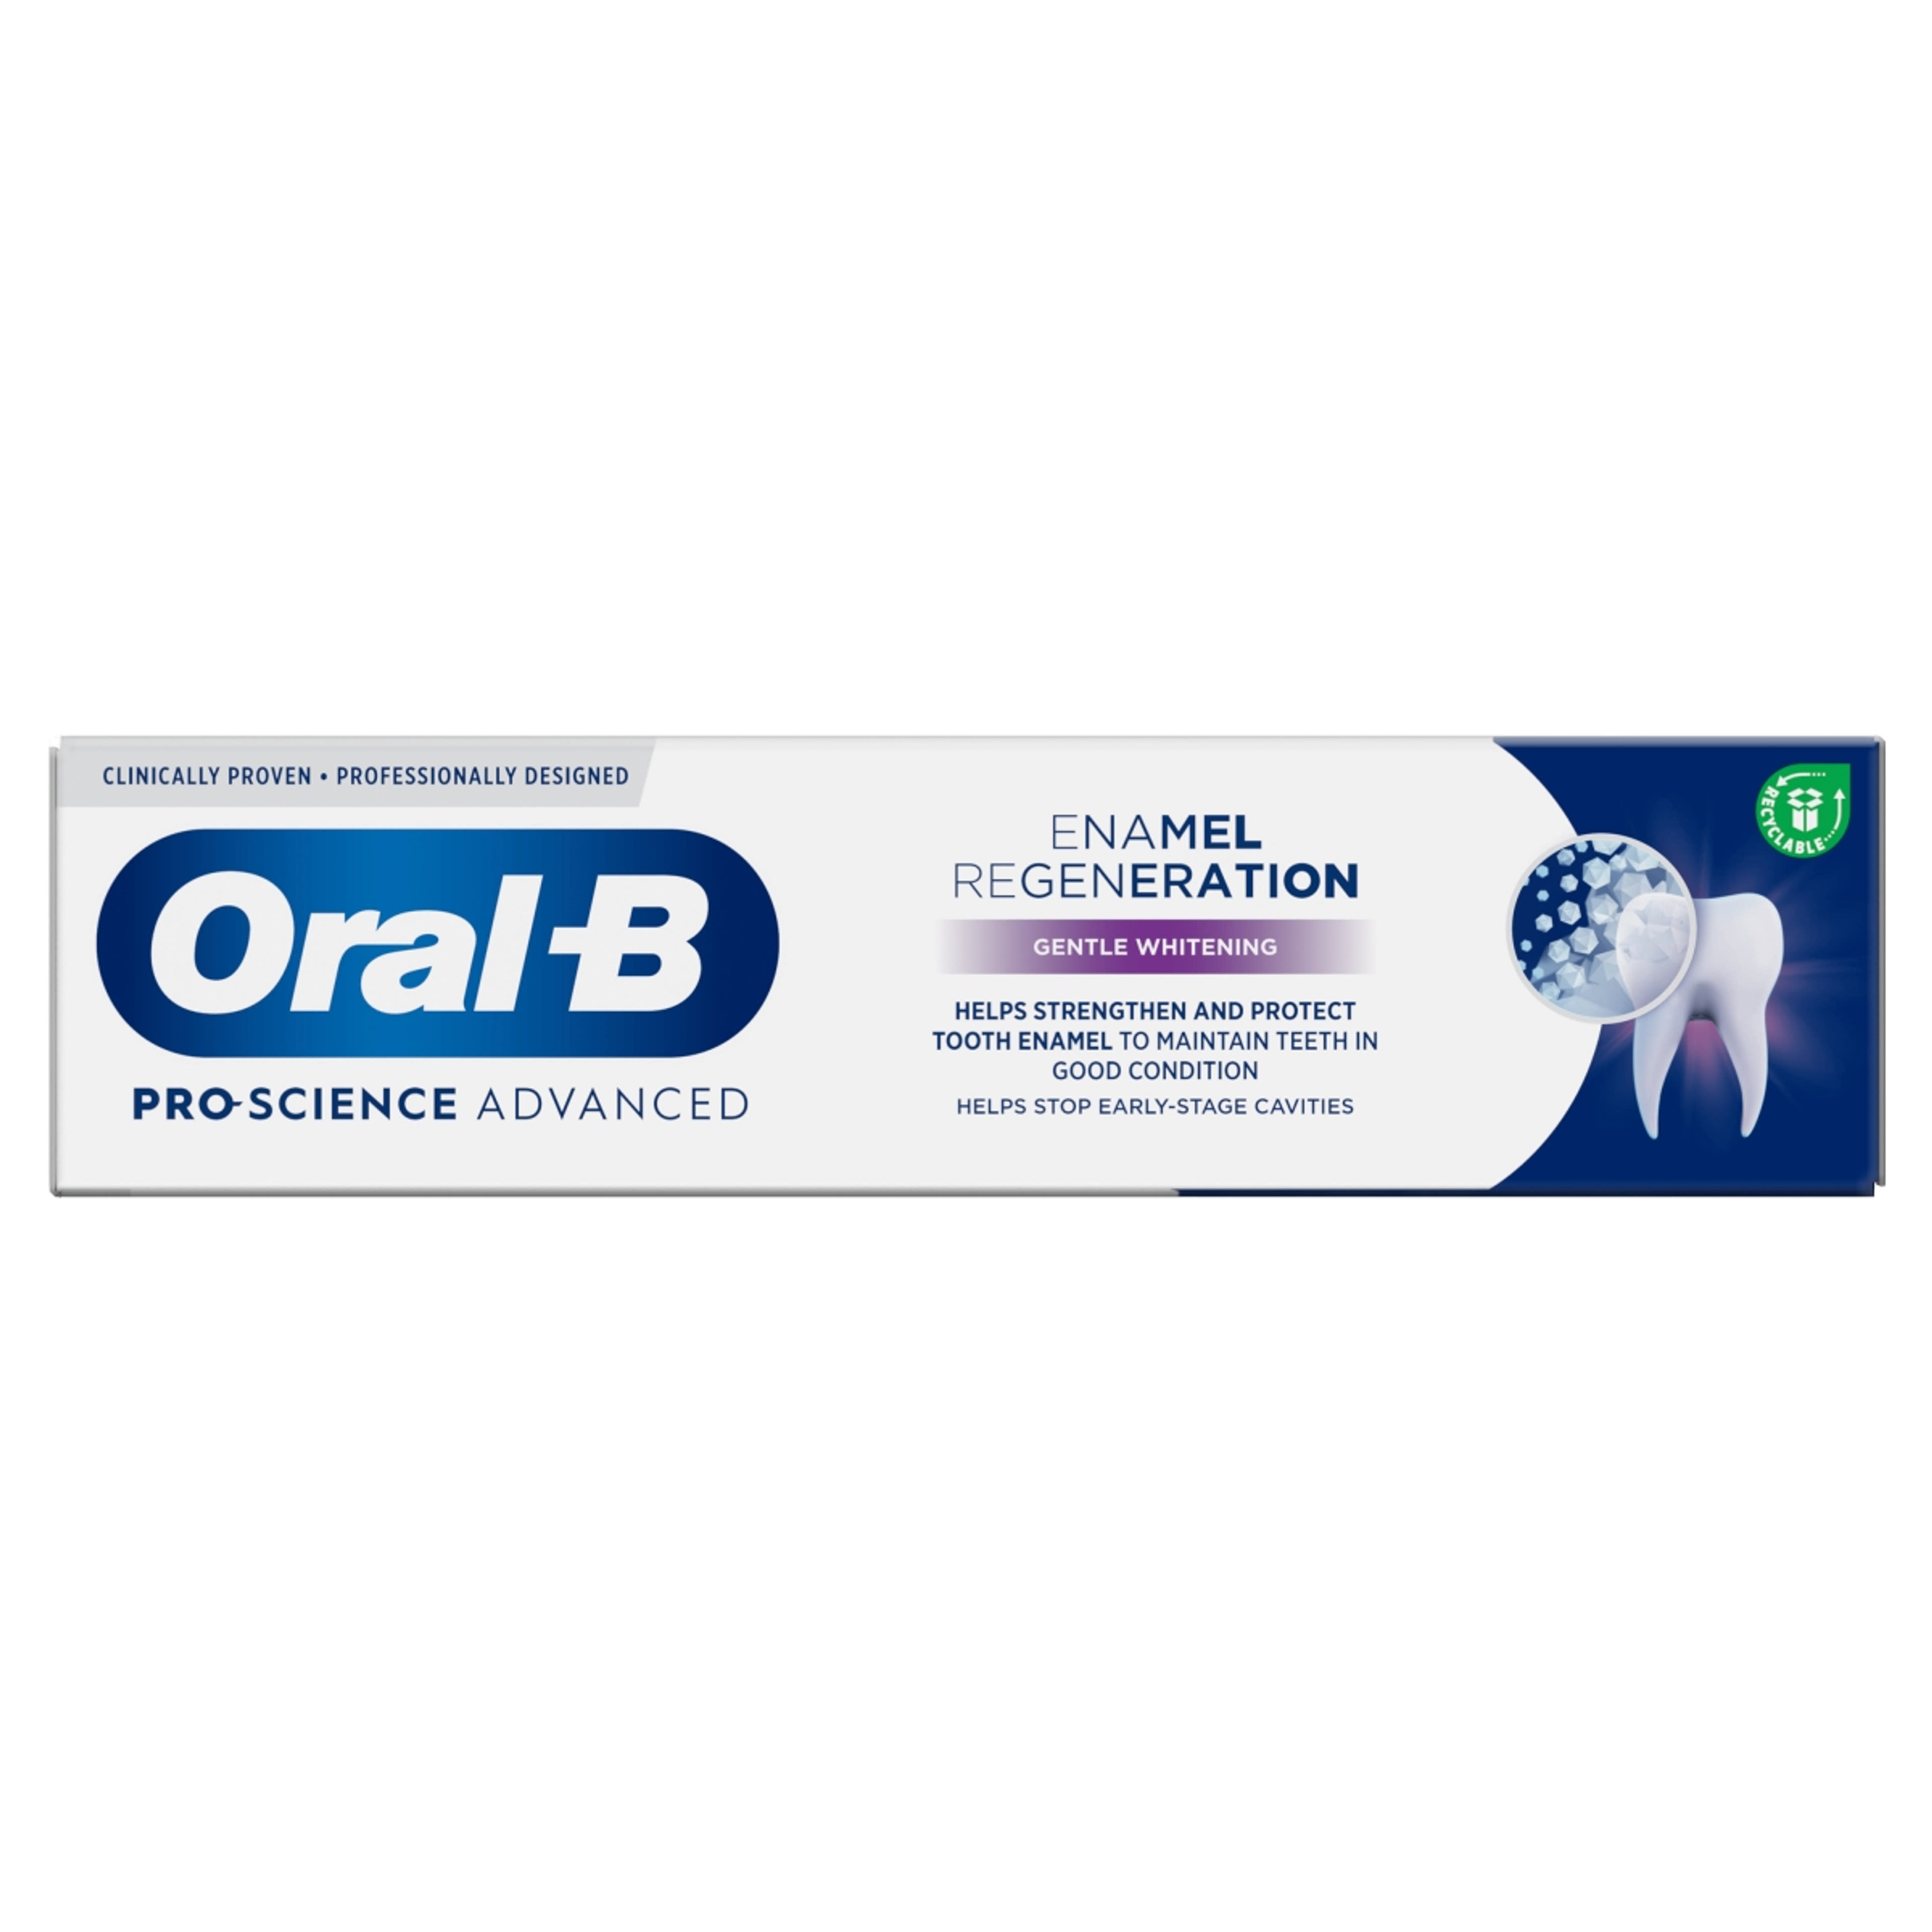 Oral-B Professional Regenerate Enamel Gentle Whitening fogkrém - 75 ml